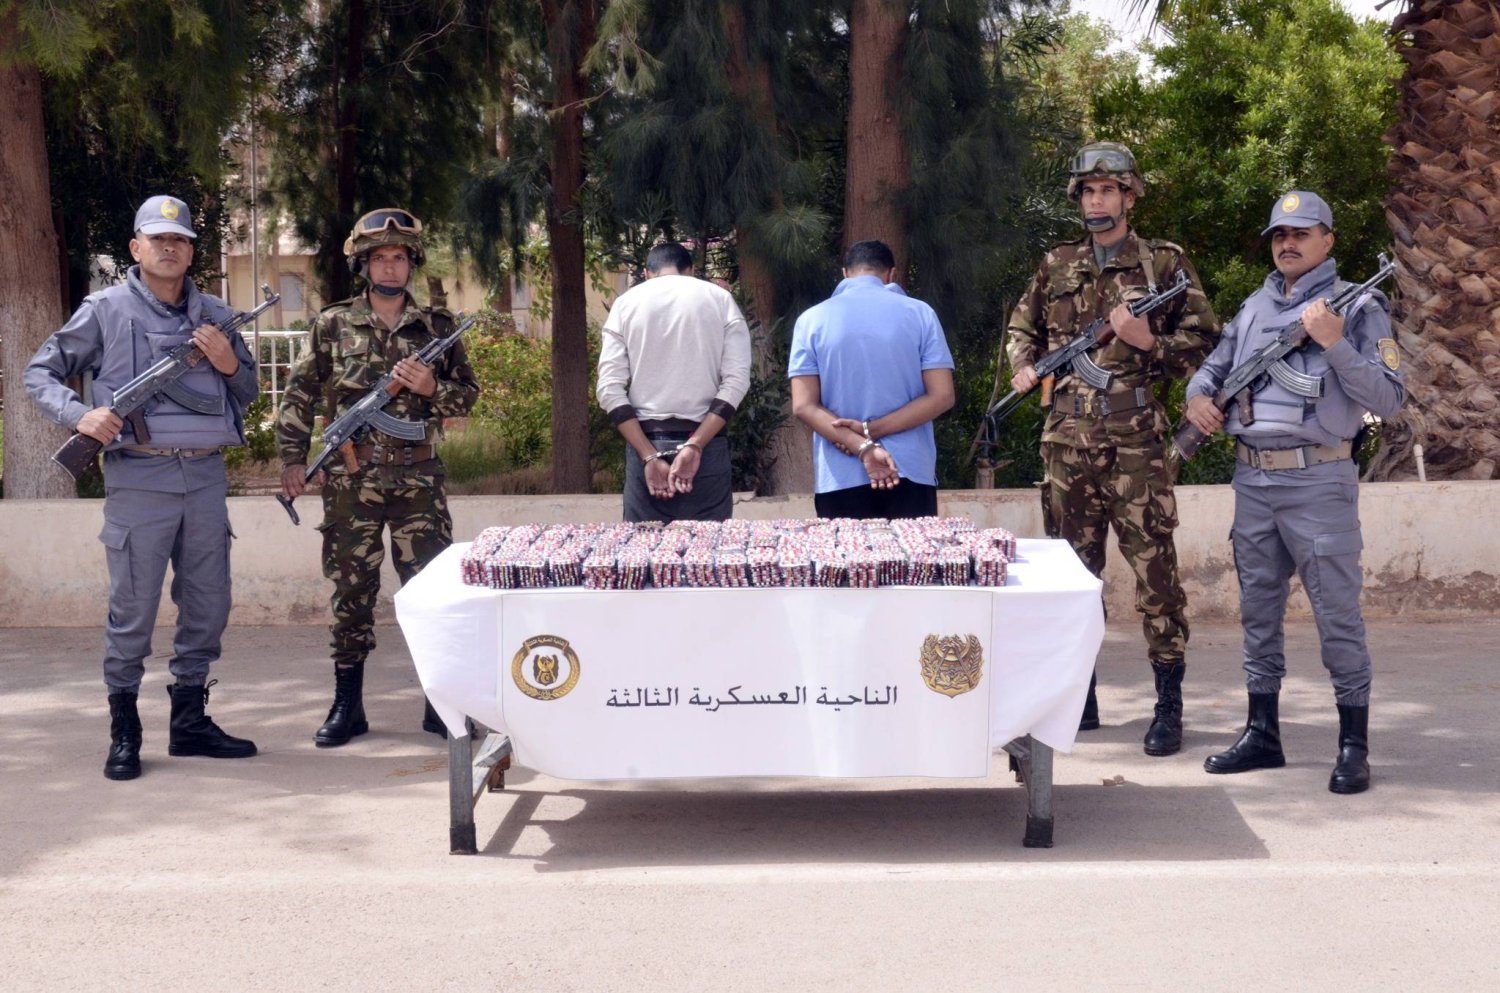 شخصان أوقفهما الجيش الجزائري بشبهة تجارة مخدرات (وزارة الدفاع)